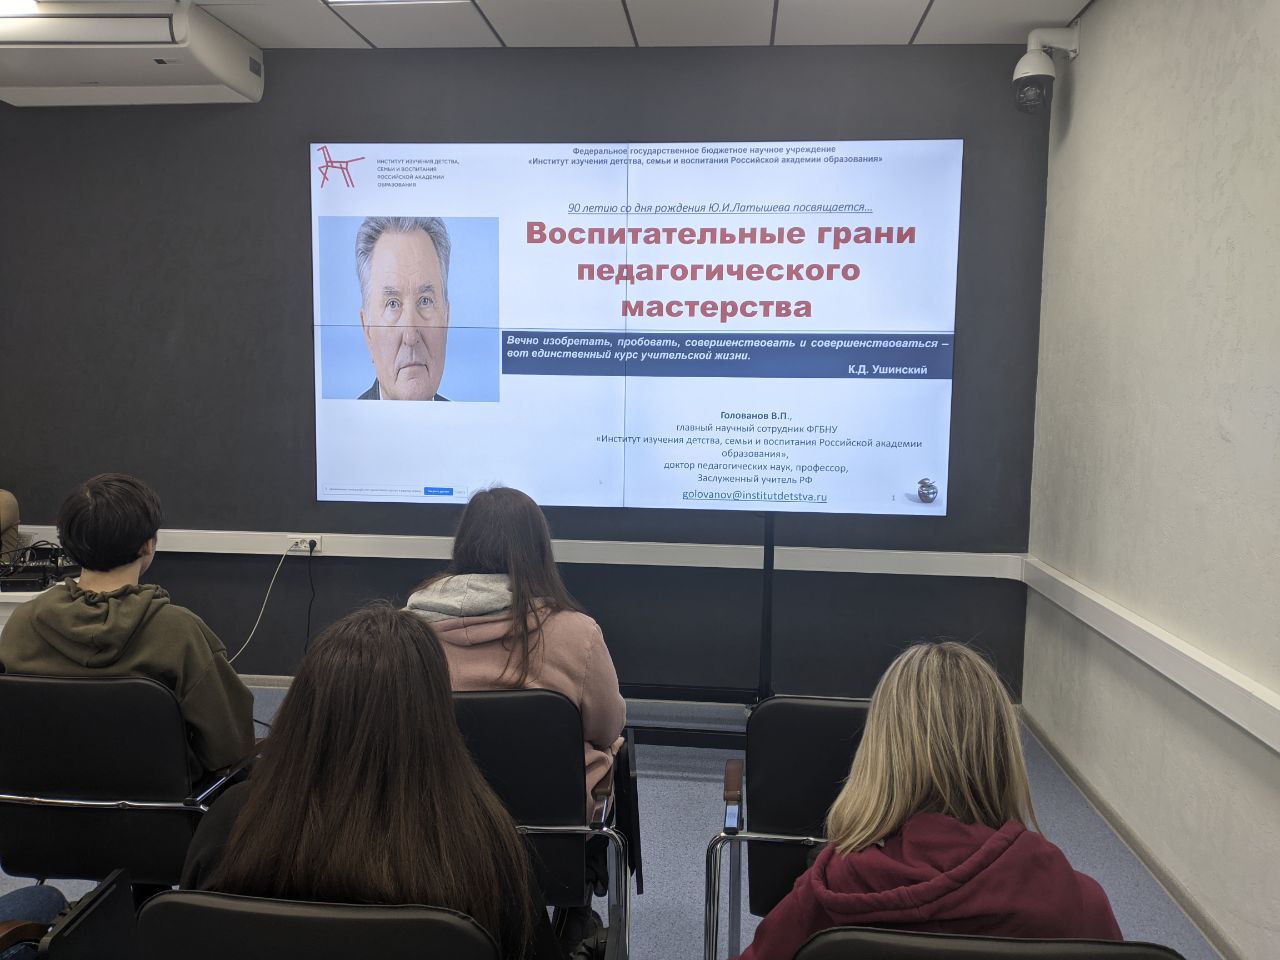  В технопарке УлГПУ прошли   открытые онлайн-лекции представителей Российской академии образования  Светланы Ивановой и  Виктора Голованова